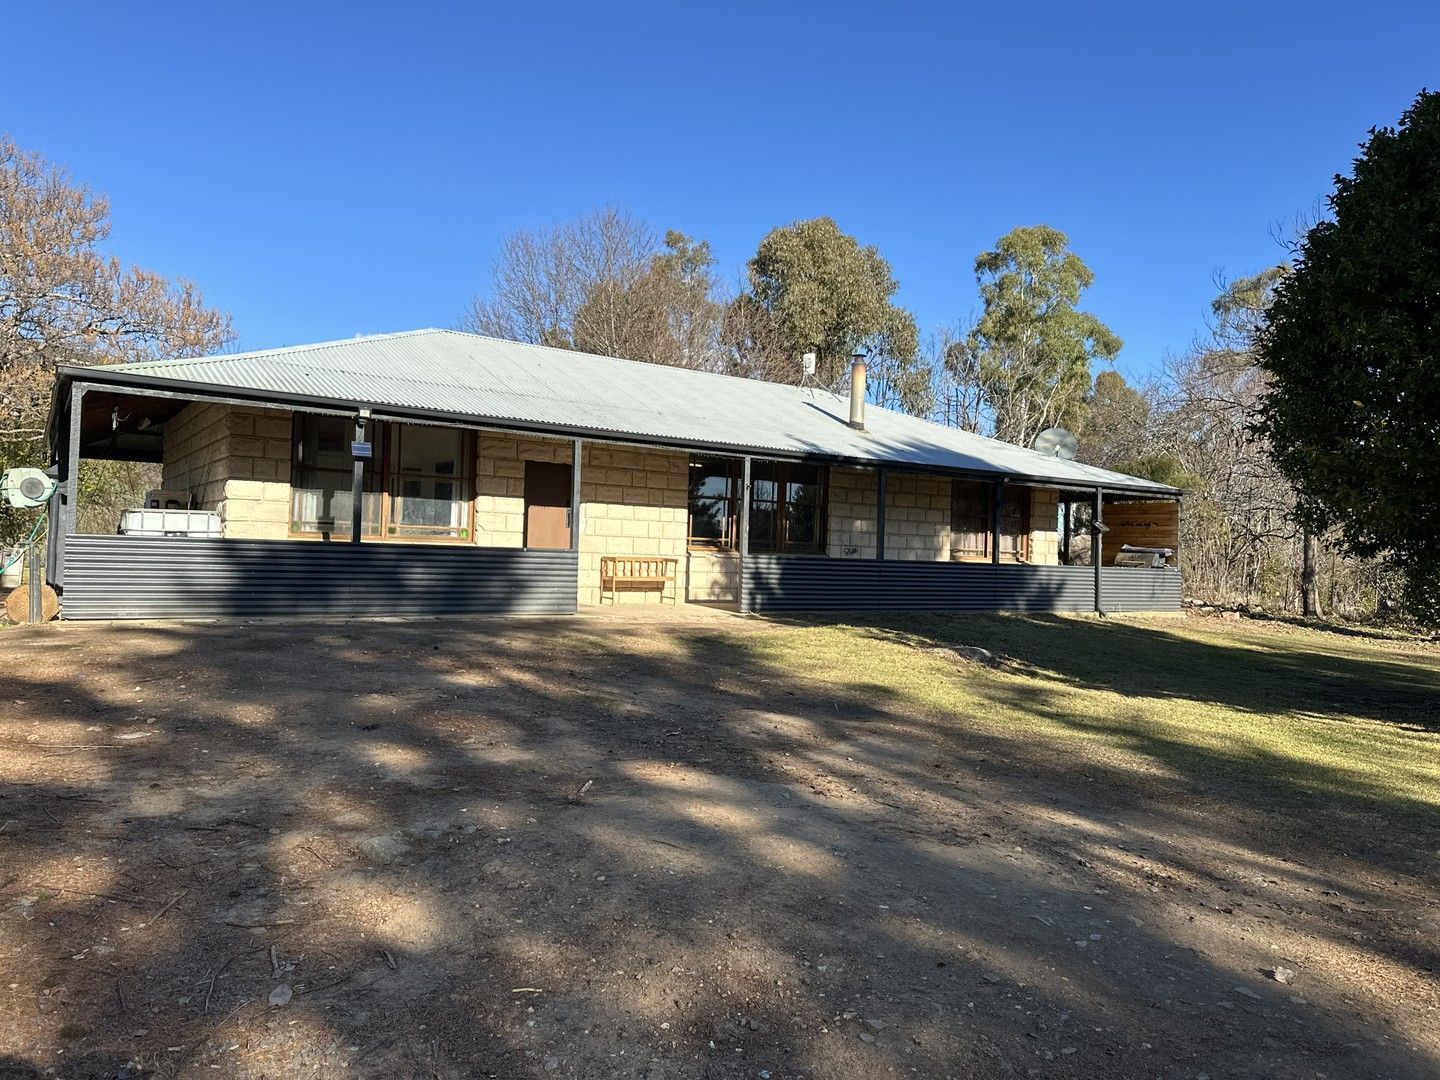 4 bedrooms Acreage / Semi-Rural in 11 Reservoir Lane TUMBARUMBA NSW, 2653